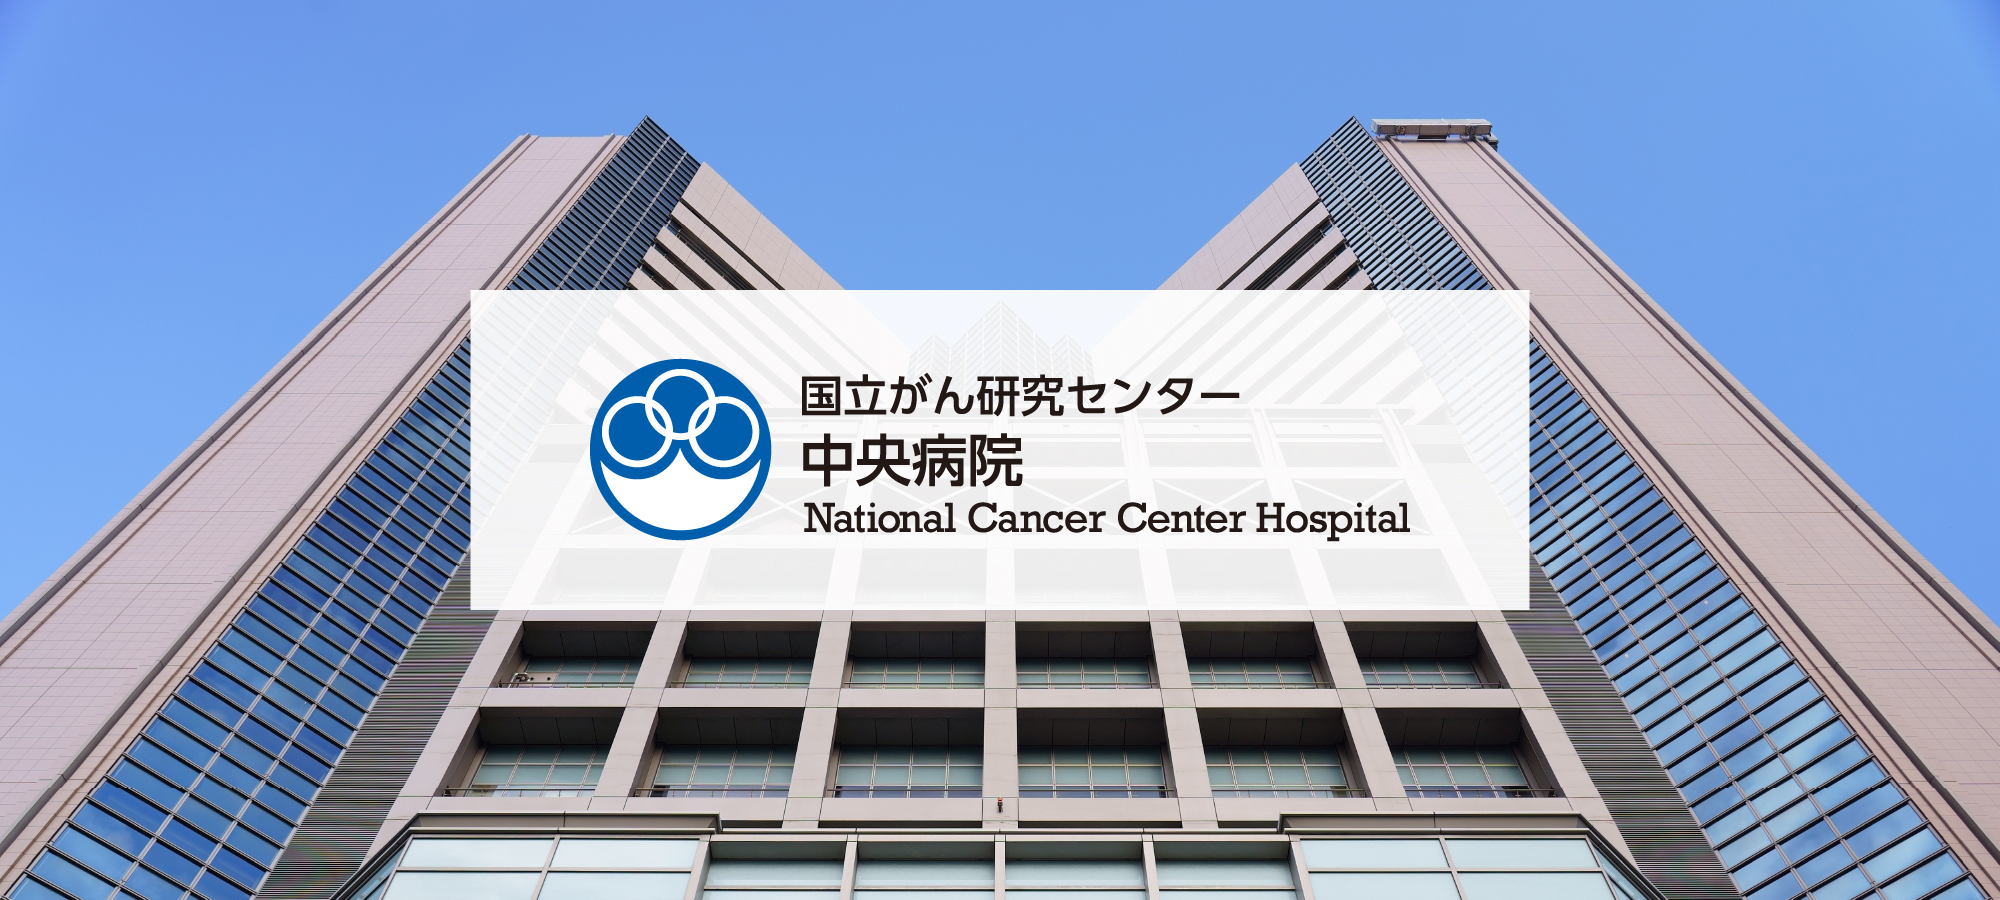 국립 암 연구 센터 중앙 병원 National Cancer Center Hospital